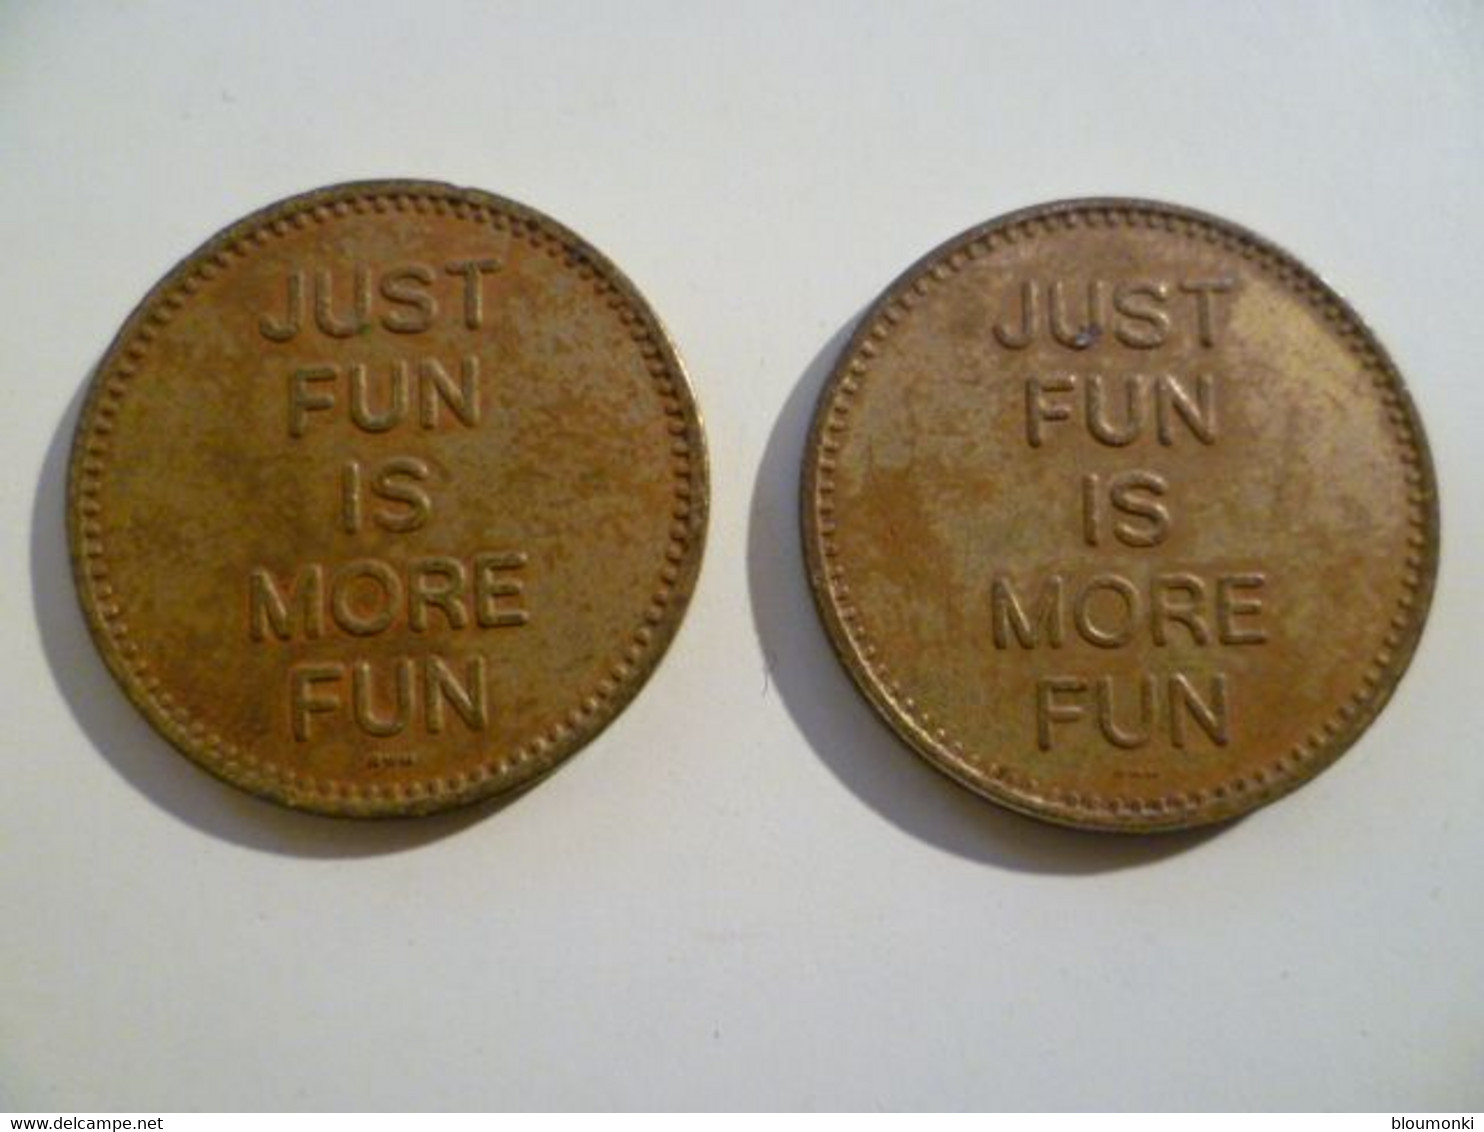 2 Jetons Etats Unis / USA Coins / ACRA No Cash Value Just Fun Is More Fun - Profesionales/De Sociedad